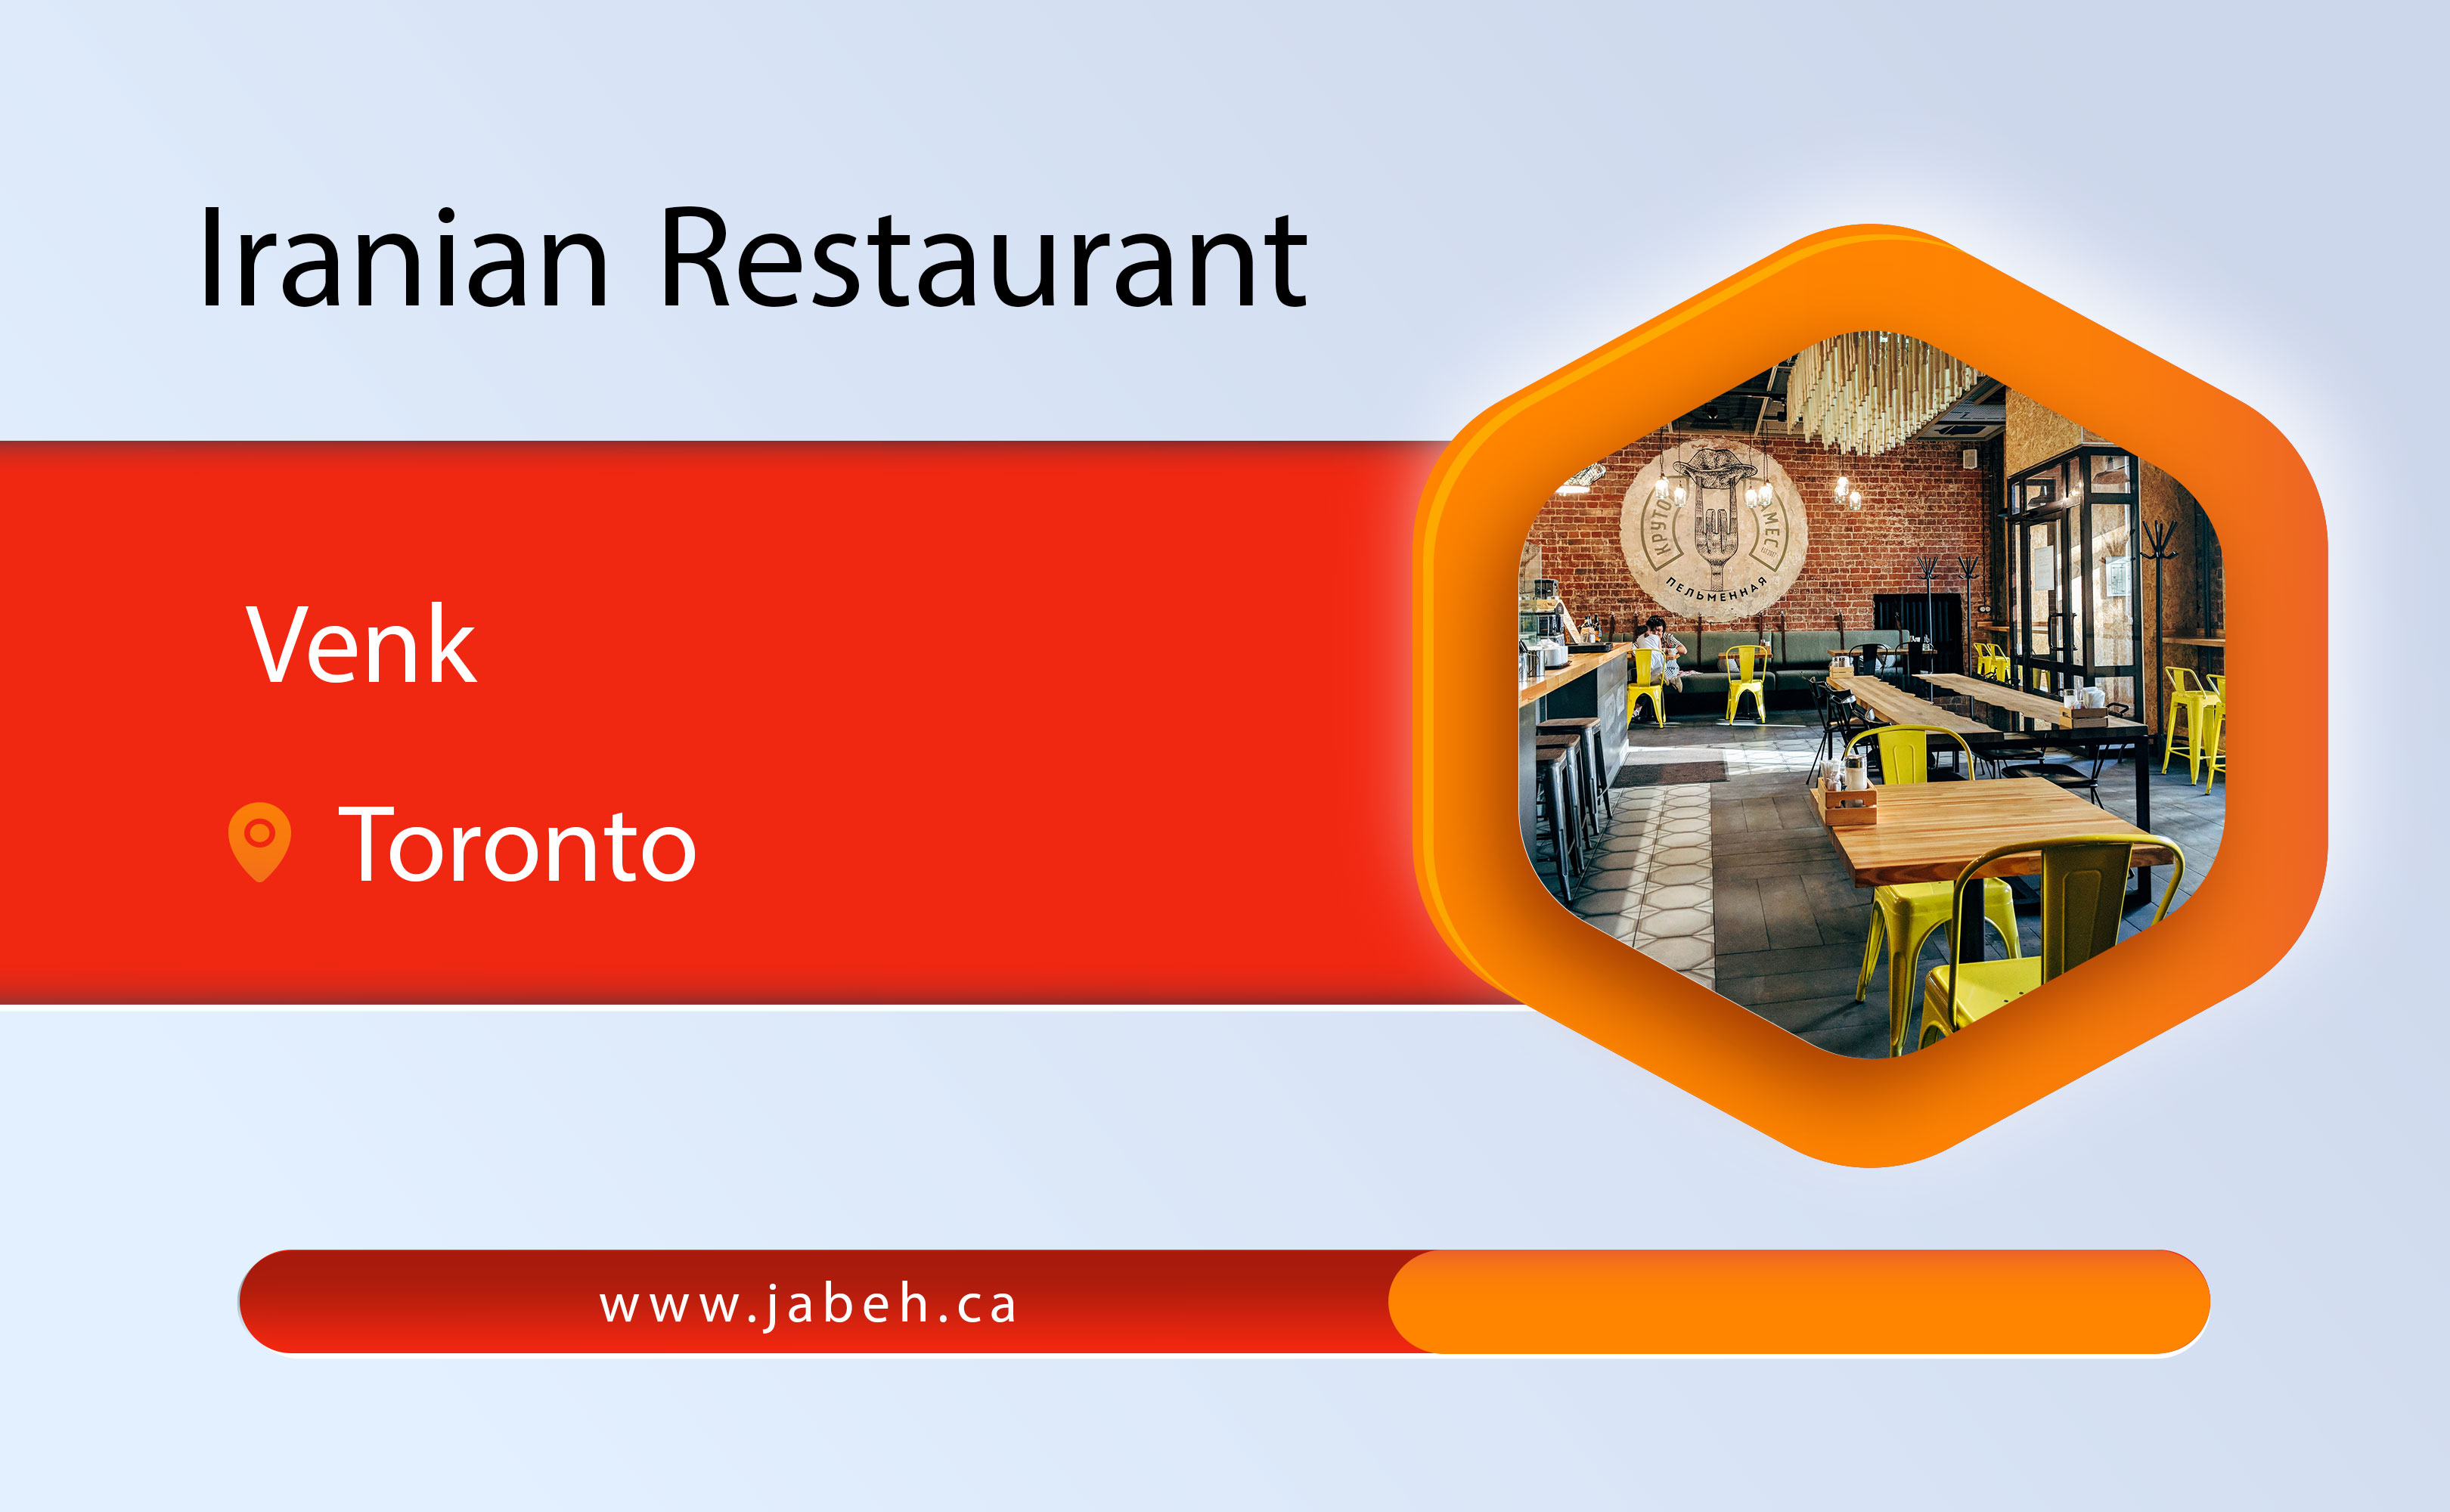 Wenk Iranian restaurant in Toronto